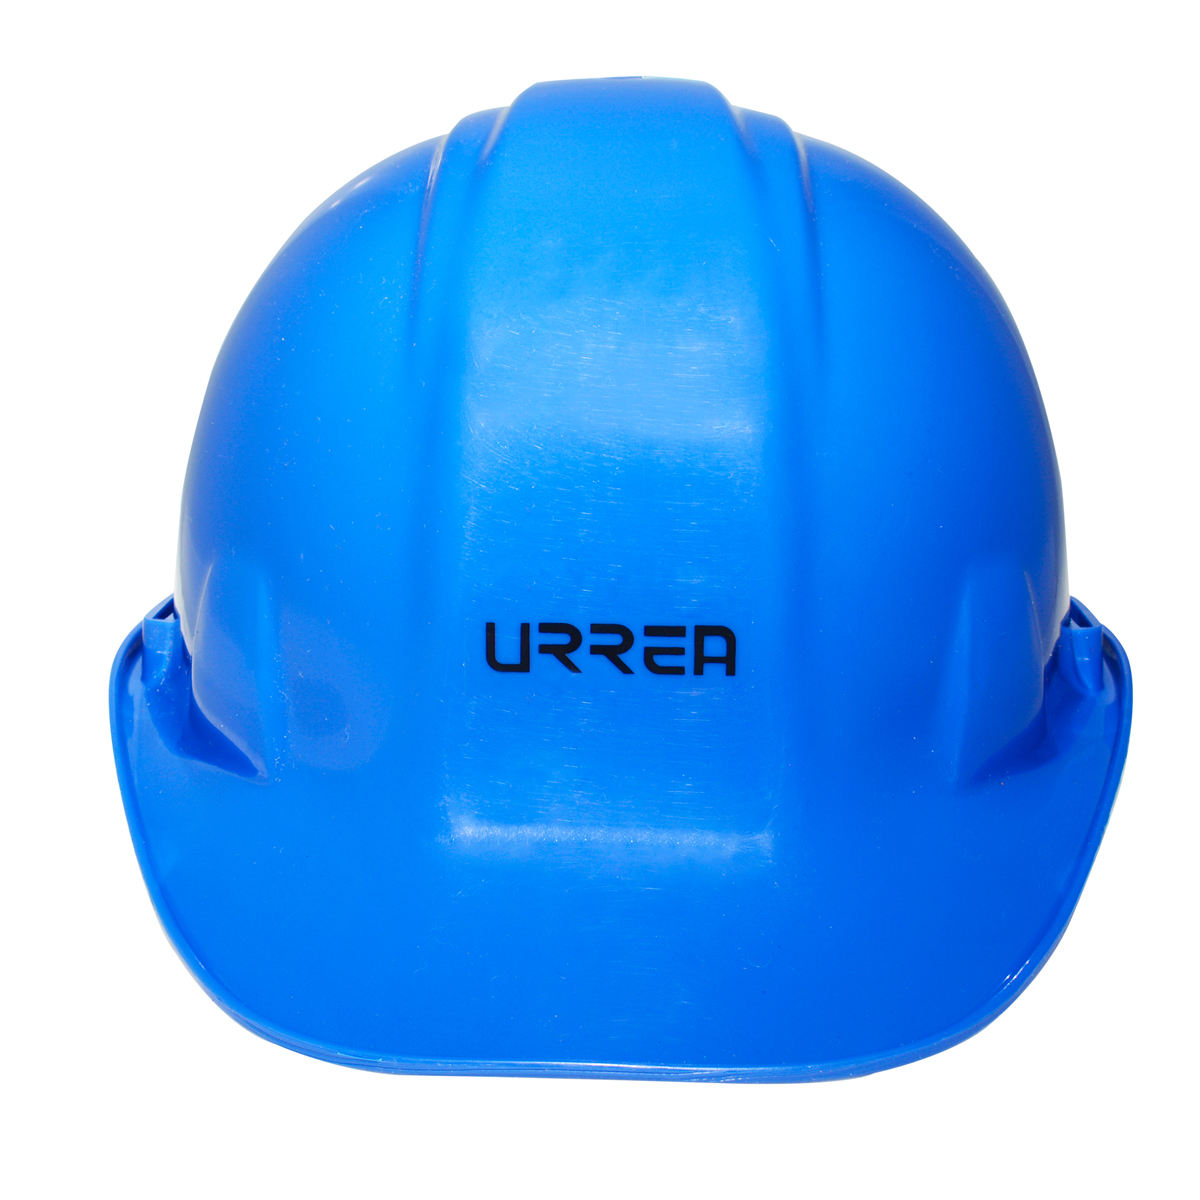 Imagen para Casco de seguridad con ajustede matraca color azul de Grupo Urrea